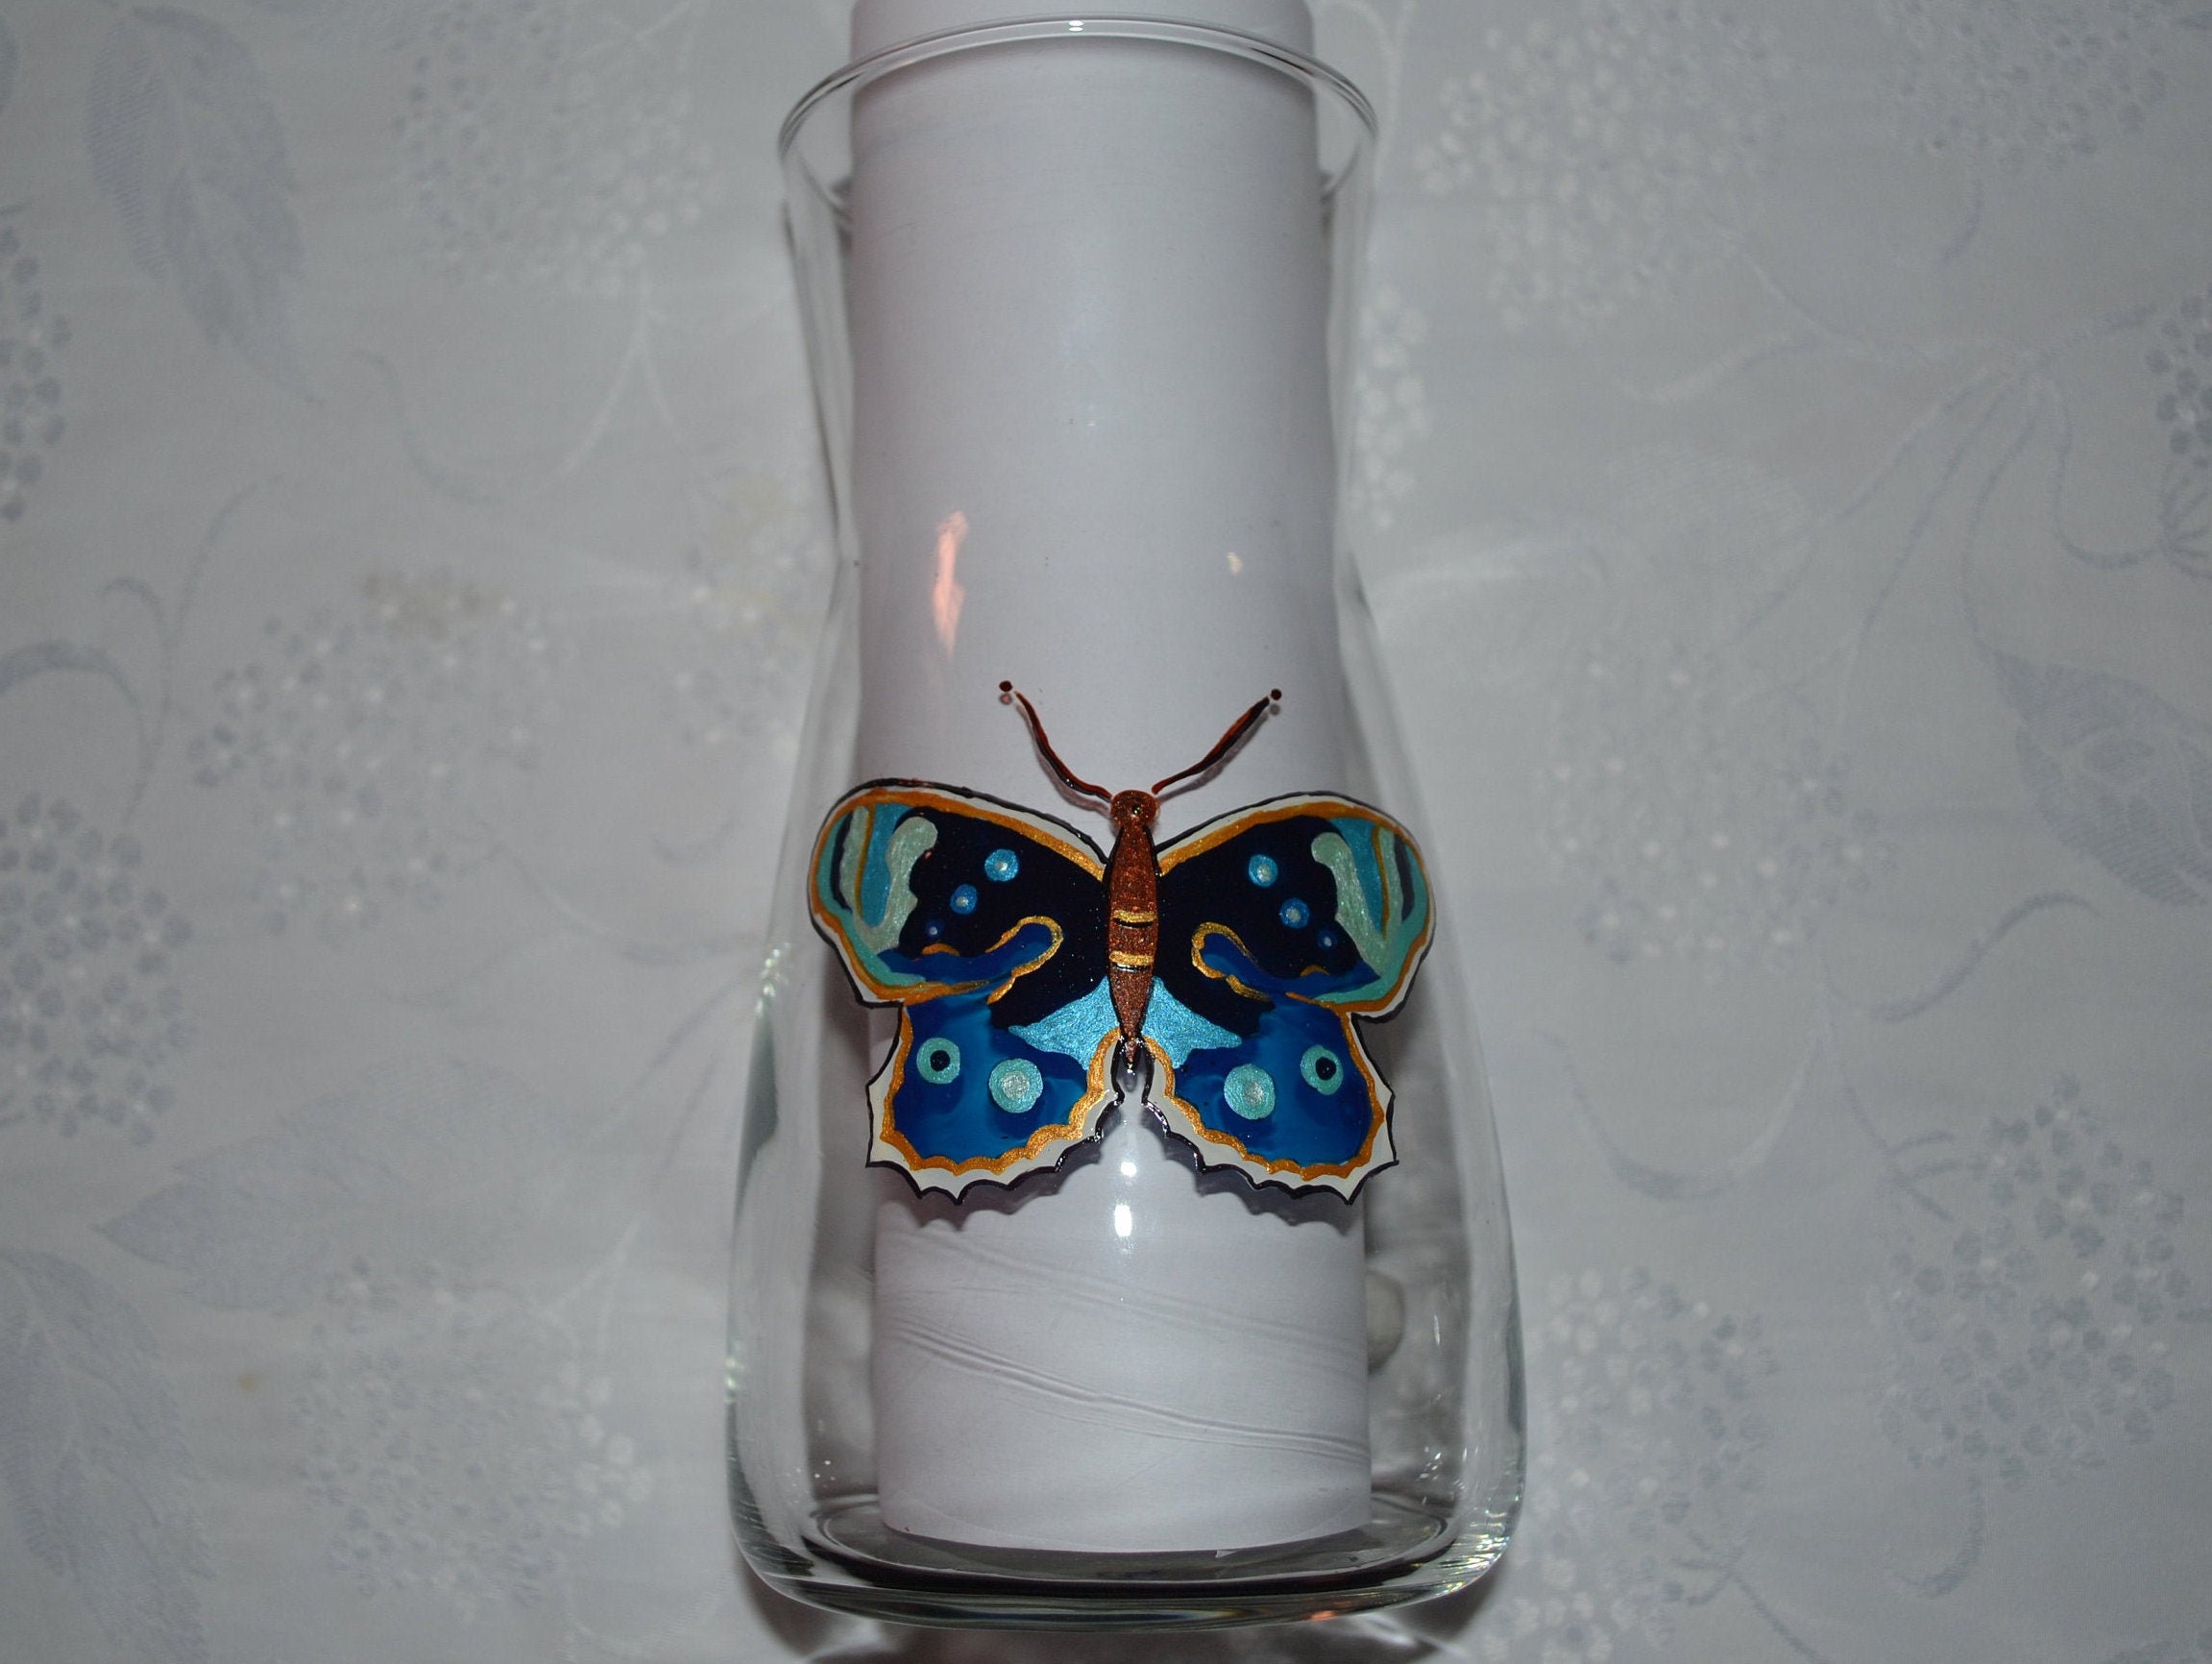 Vase en Verre Peint Papillon Bleu Or Personnalisable Etsy, Carafe Peinte Or, Vase Papillon, Vase Fra